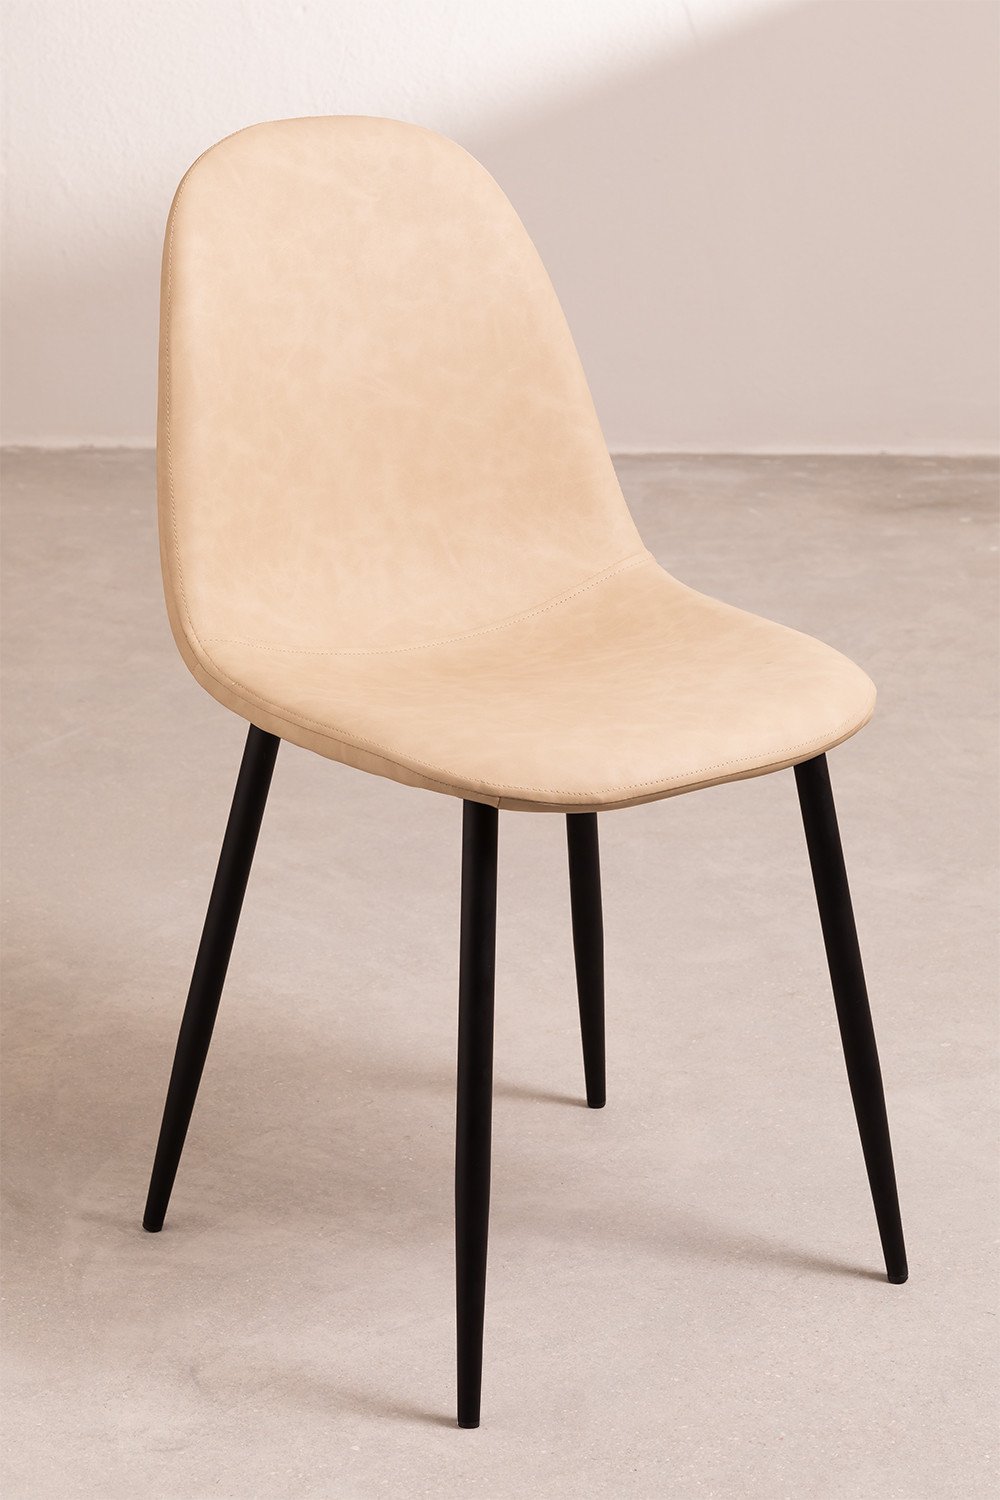 Krzeslo do Jadalni ze Sztucznej Skóry Glamm, obrazek w galerii 1